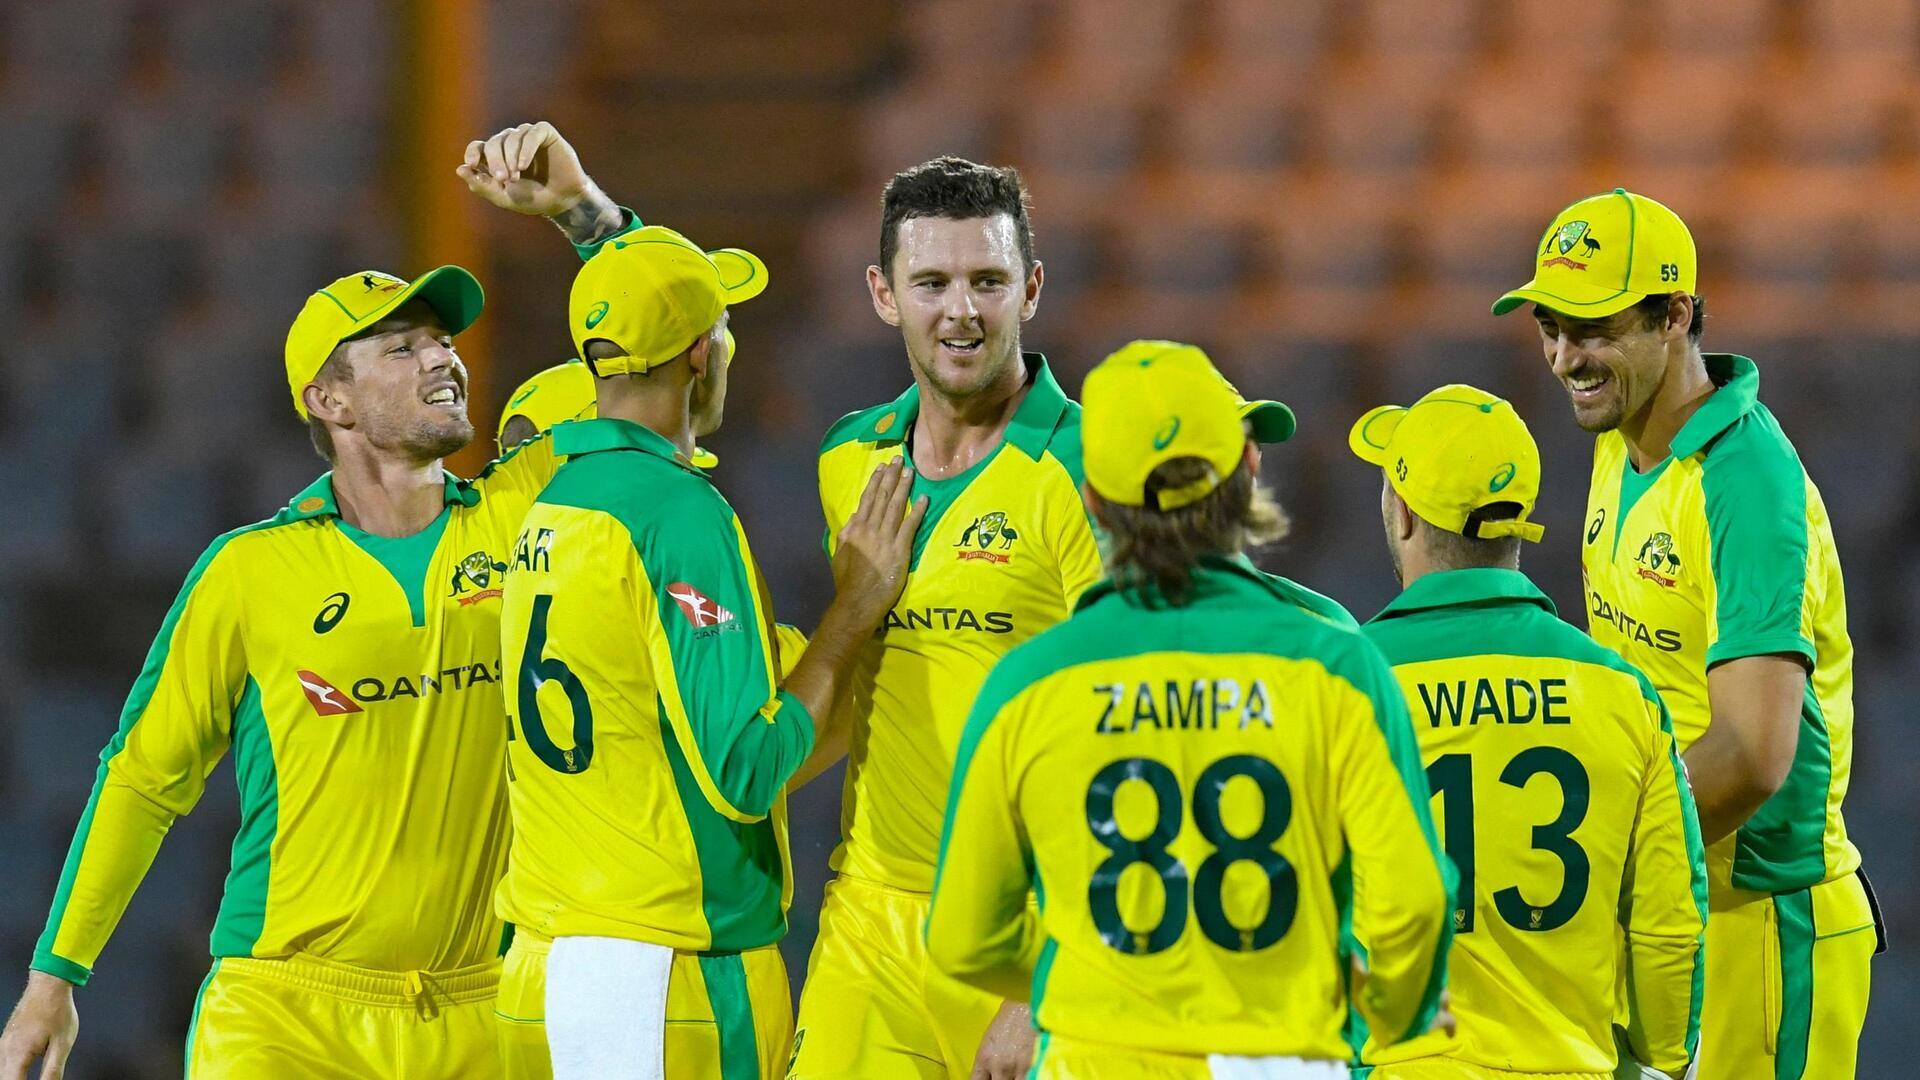 न्यूजीलैंड दौरे के लिए ऑस्ट्रेलिया की टी-20 टीम घोषित, पैट कमिंस समेत प्रमुख खिलाड़ियों की वापसी